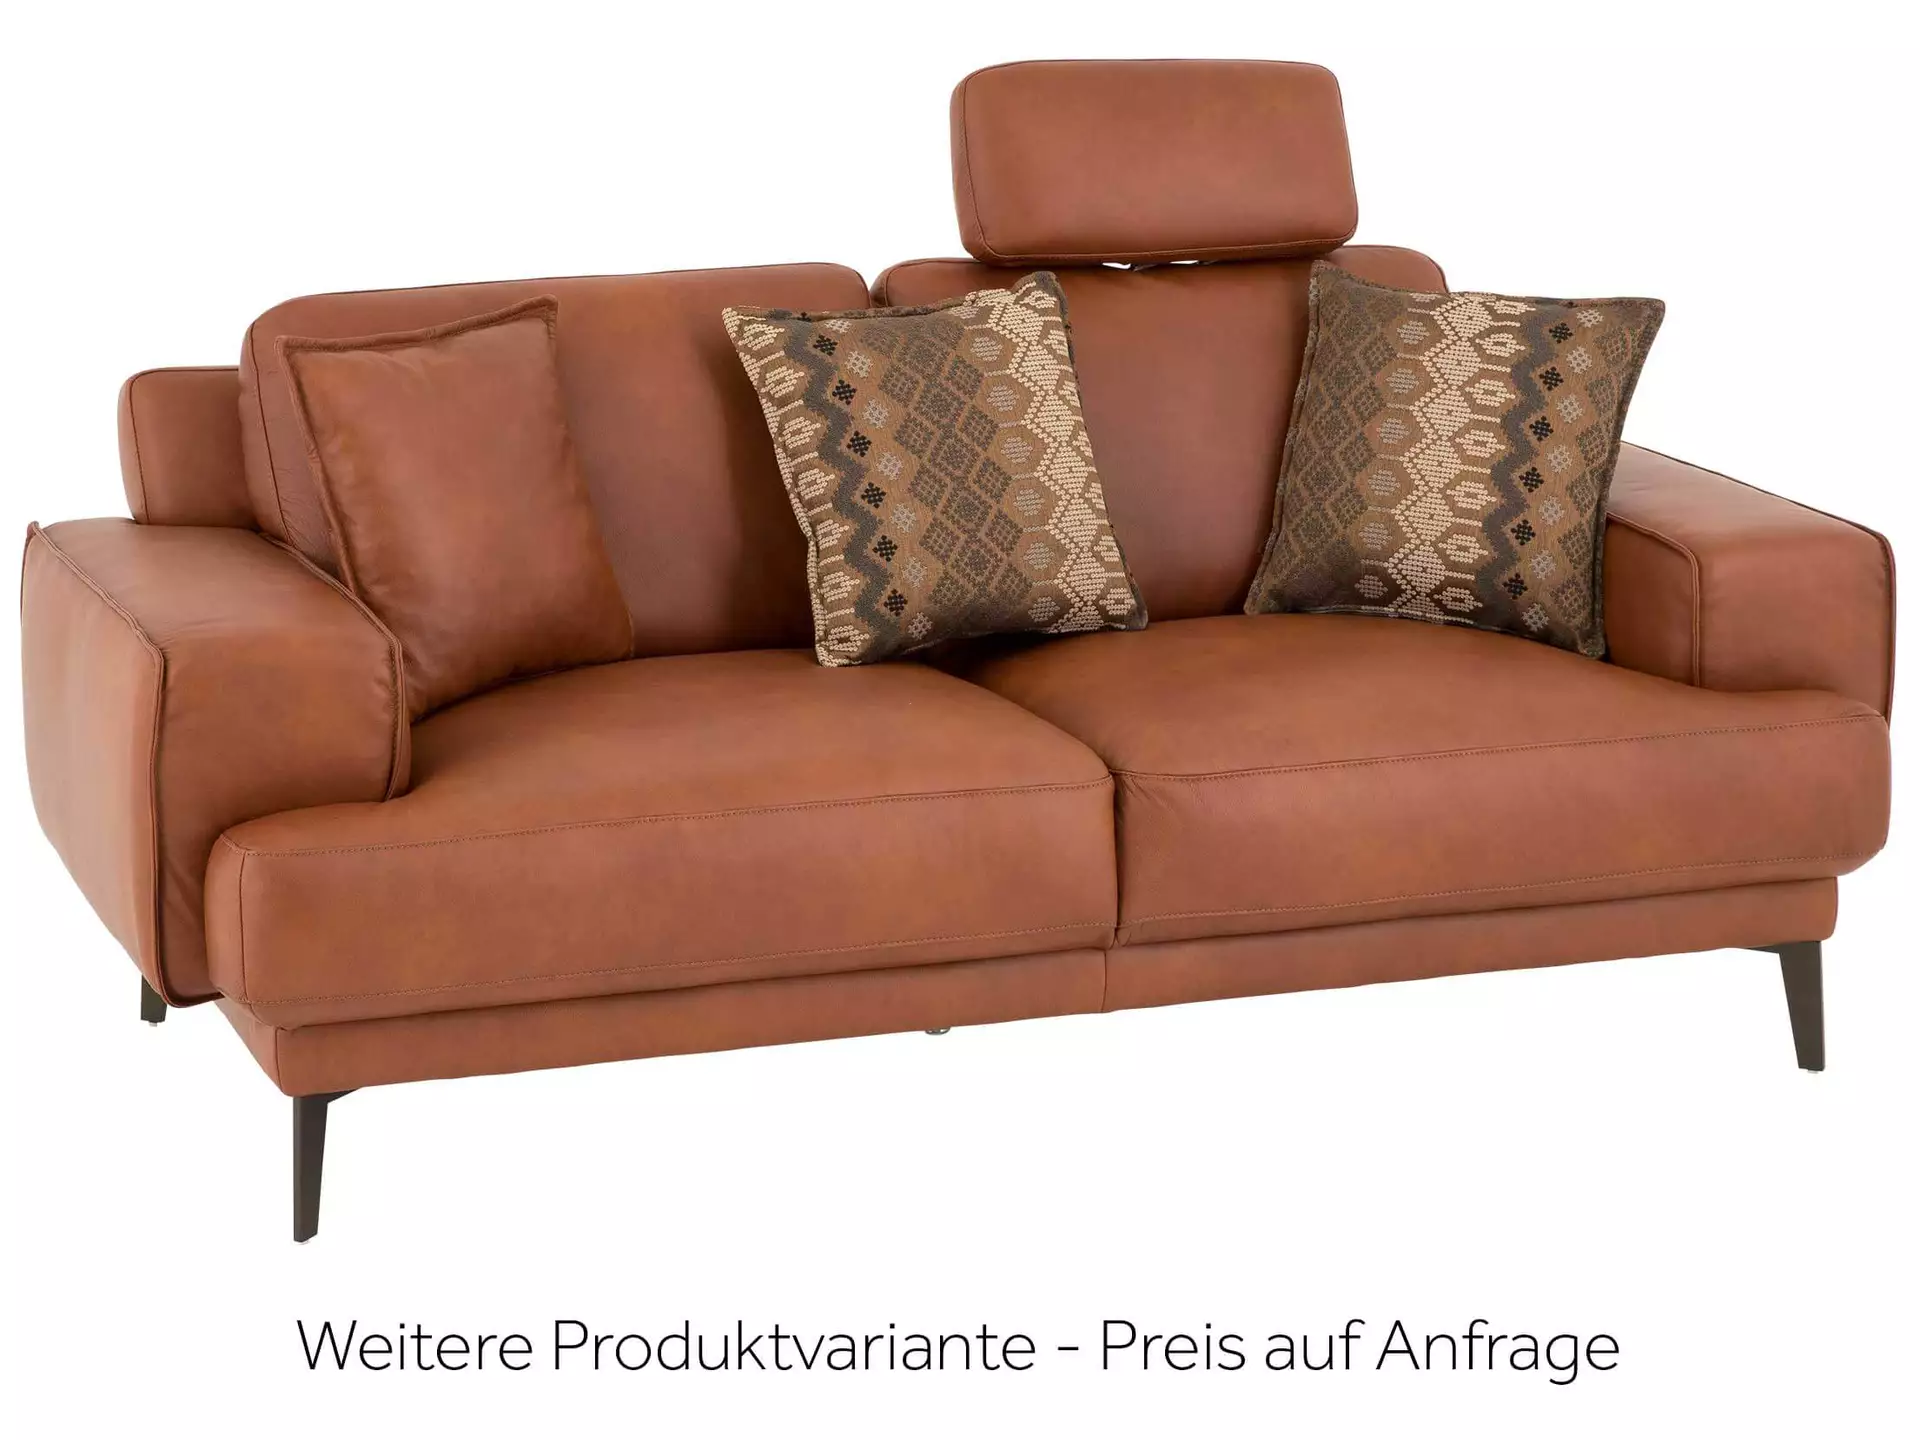 Sofa Foscaari b: 193 cm Schillig Willi / Farbe: Cognac, Material: Leder